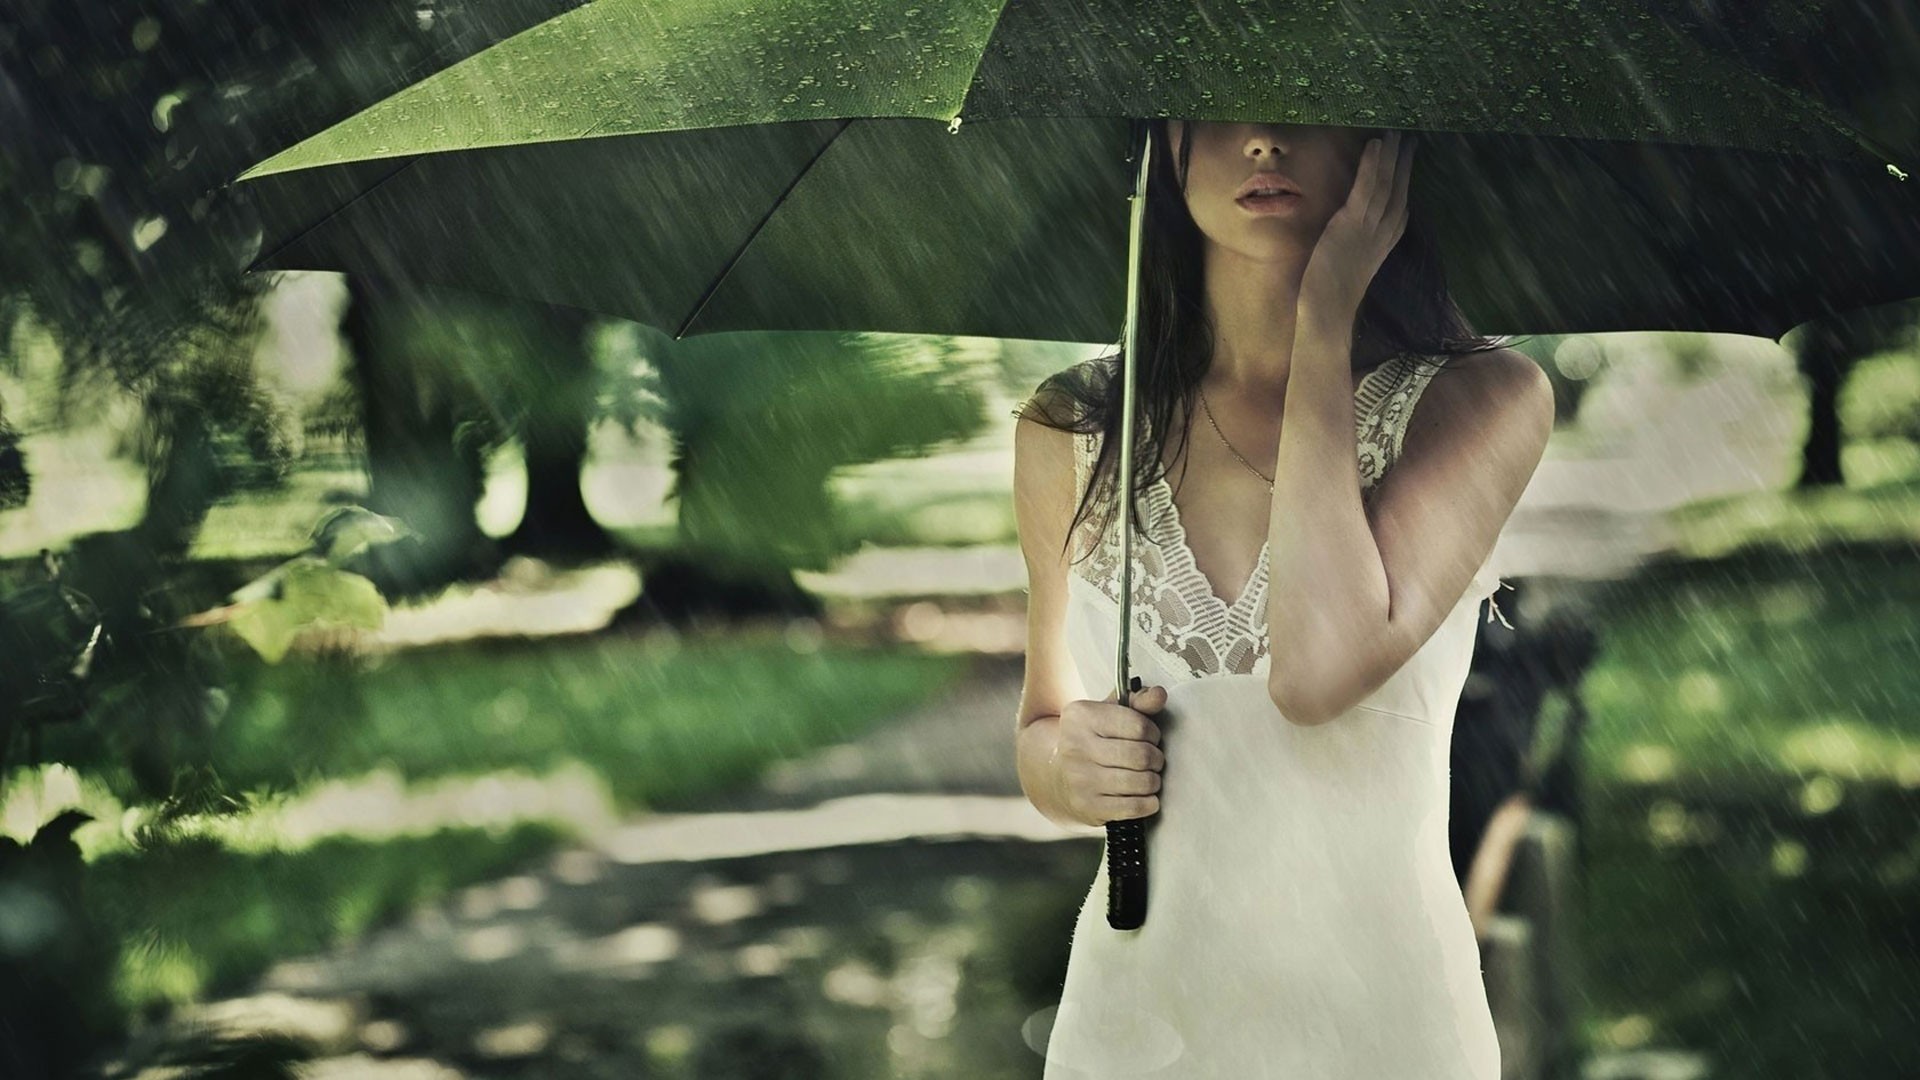 People 1920x1080 model women umbrella rain women outdoors outdoors face green women with umbrella standing